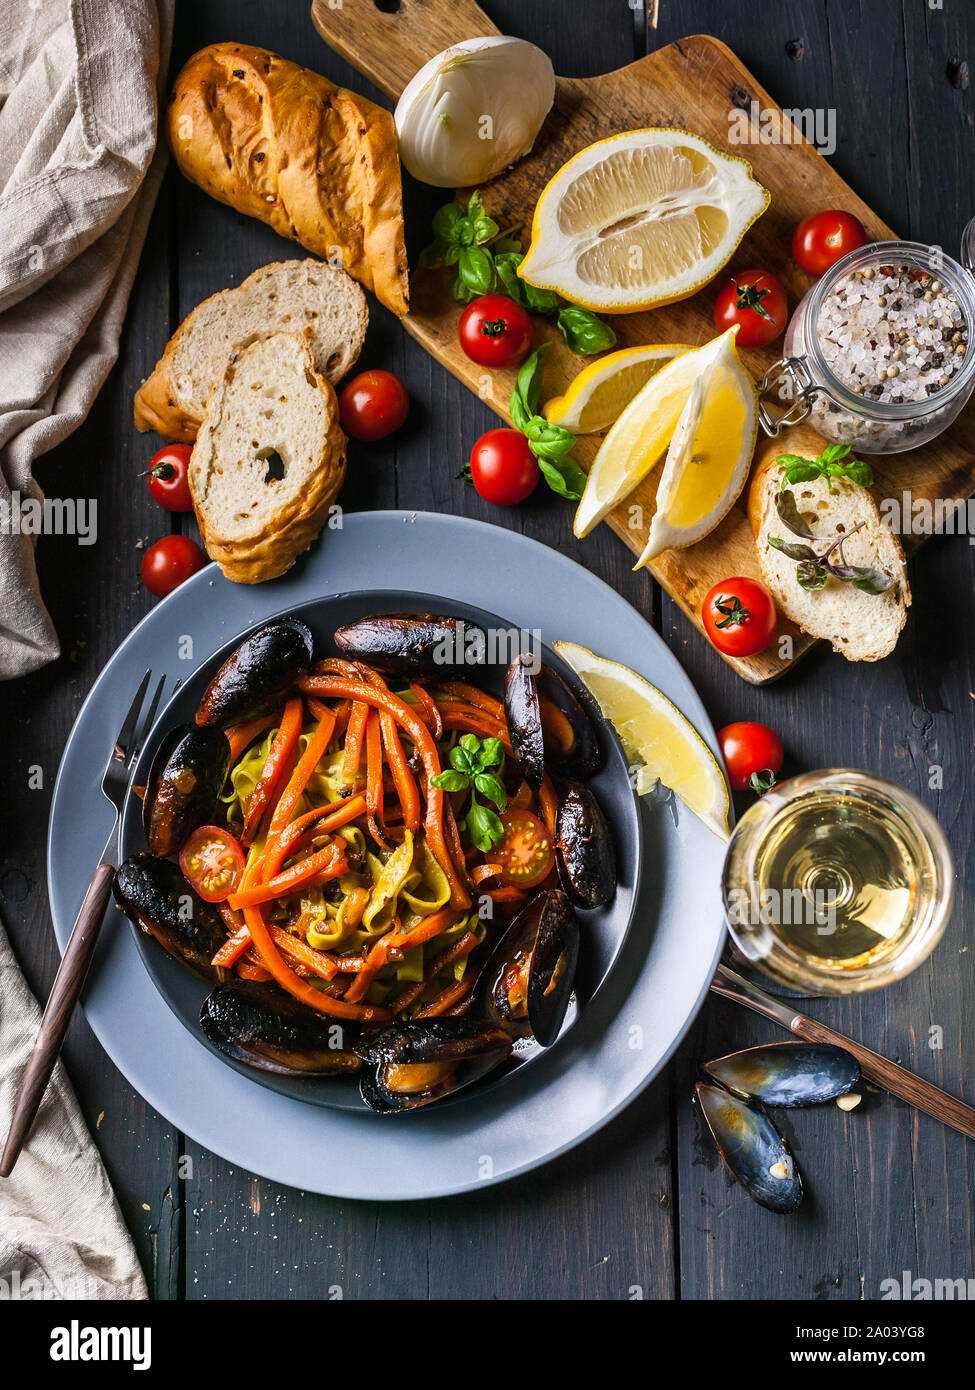 Les moules avec les légumes et spaghetti. Cuisine méditerranéenne. Les fruits de mer et le vin. Shot verticale Banque D'Images